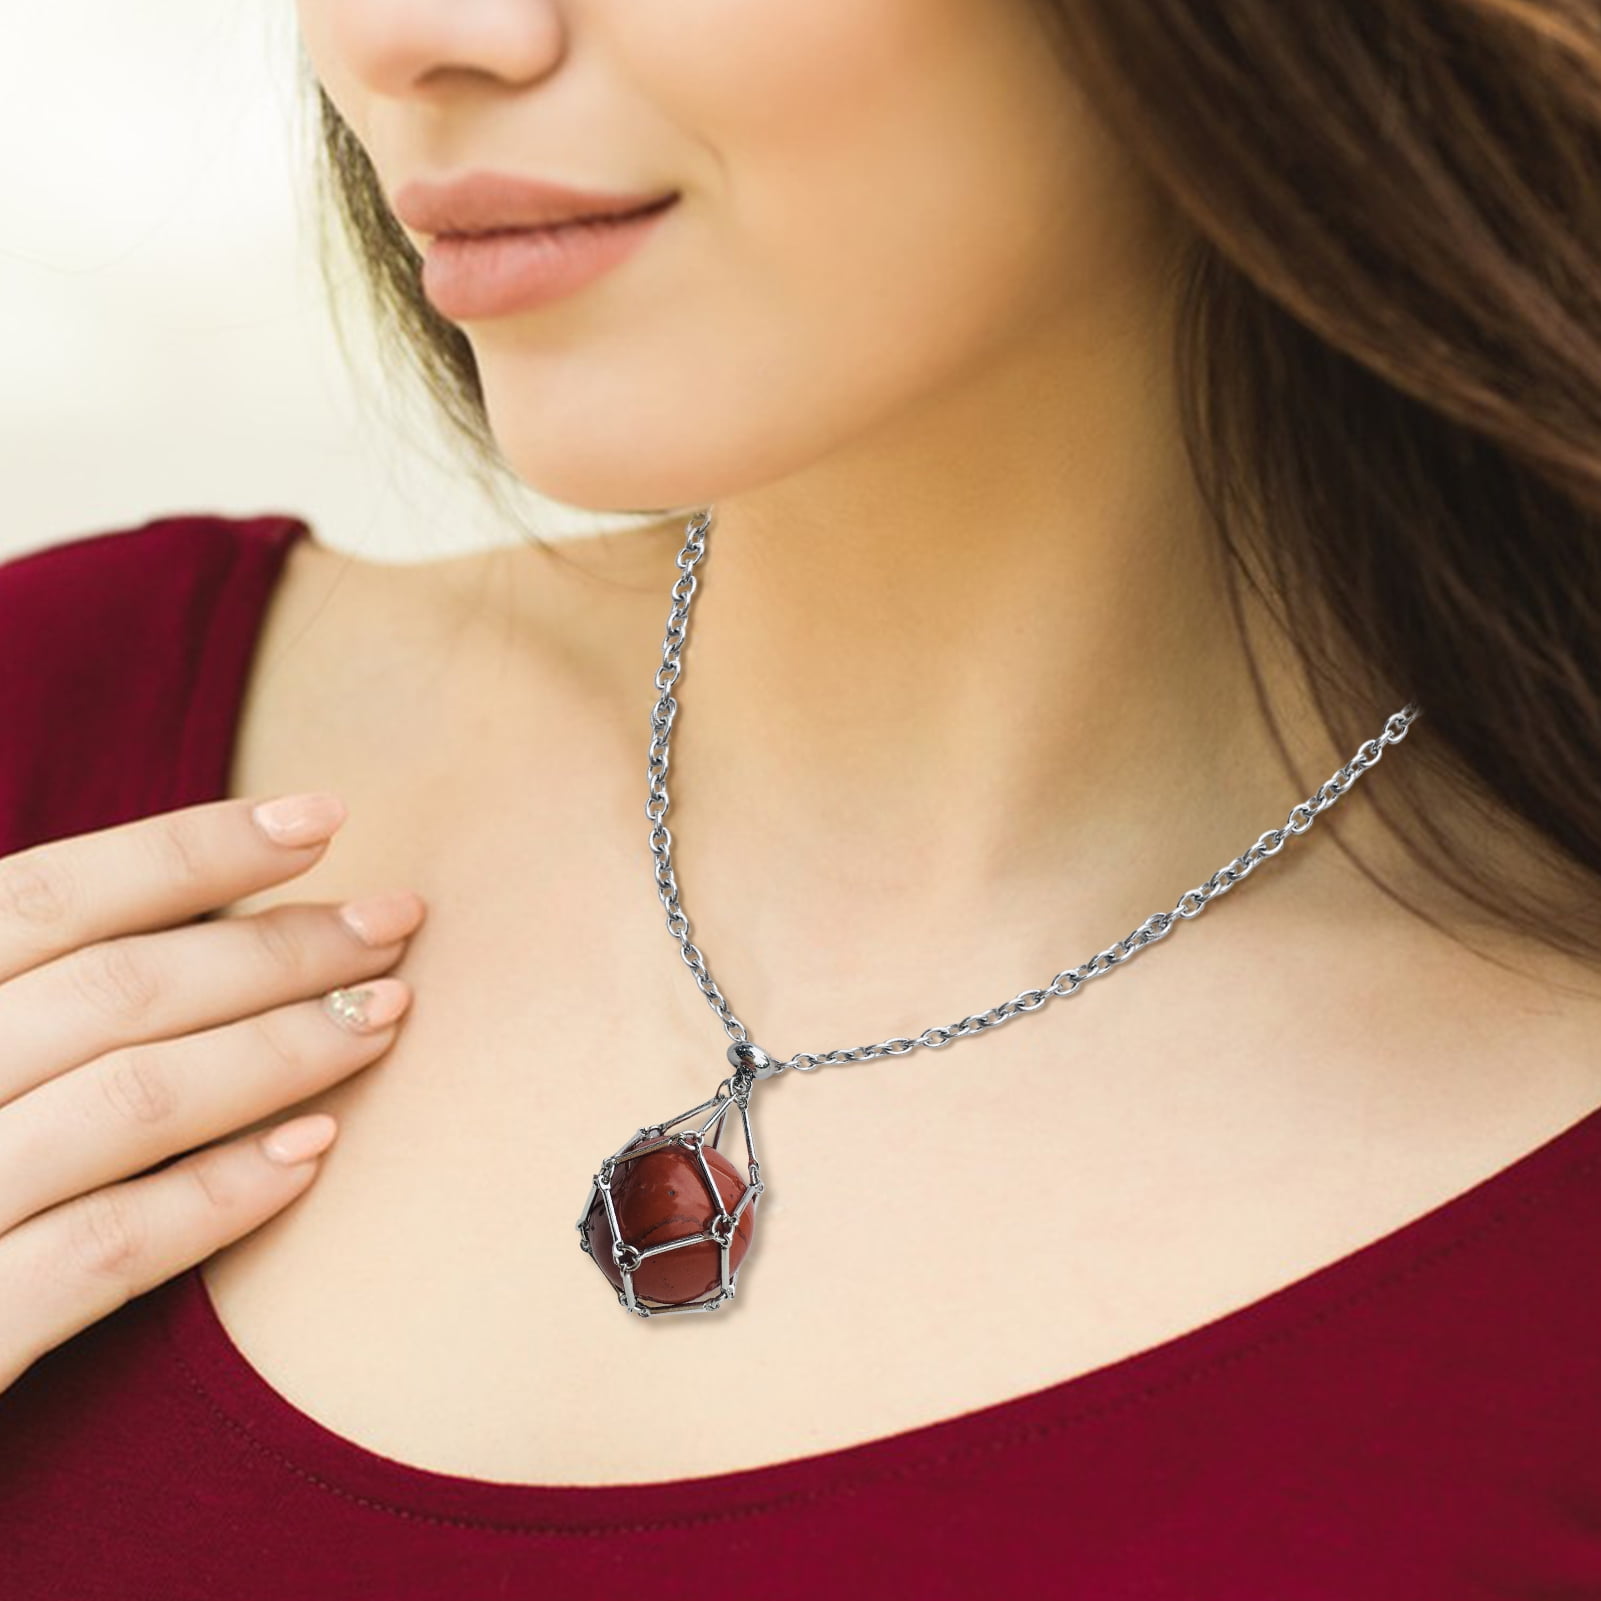 60Pcs Spiral Bead Cage Pendant Crystal Holder for Necklace Making Crystal  Holder | eBay